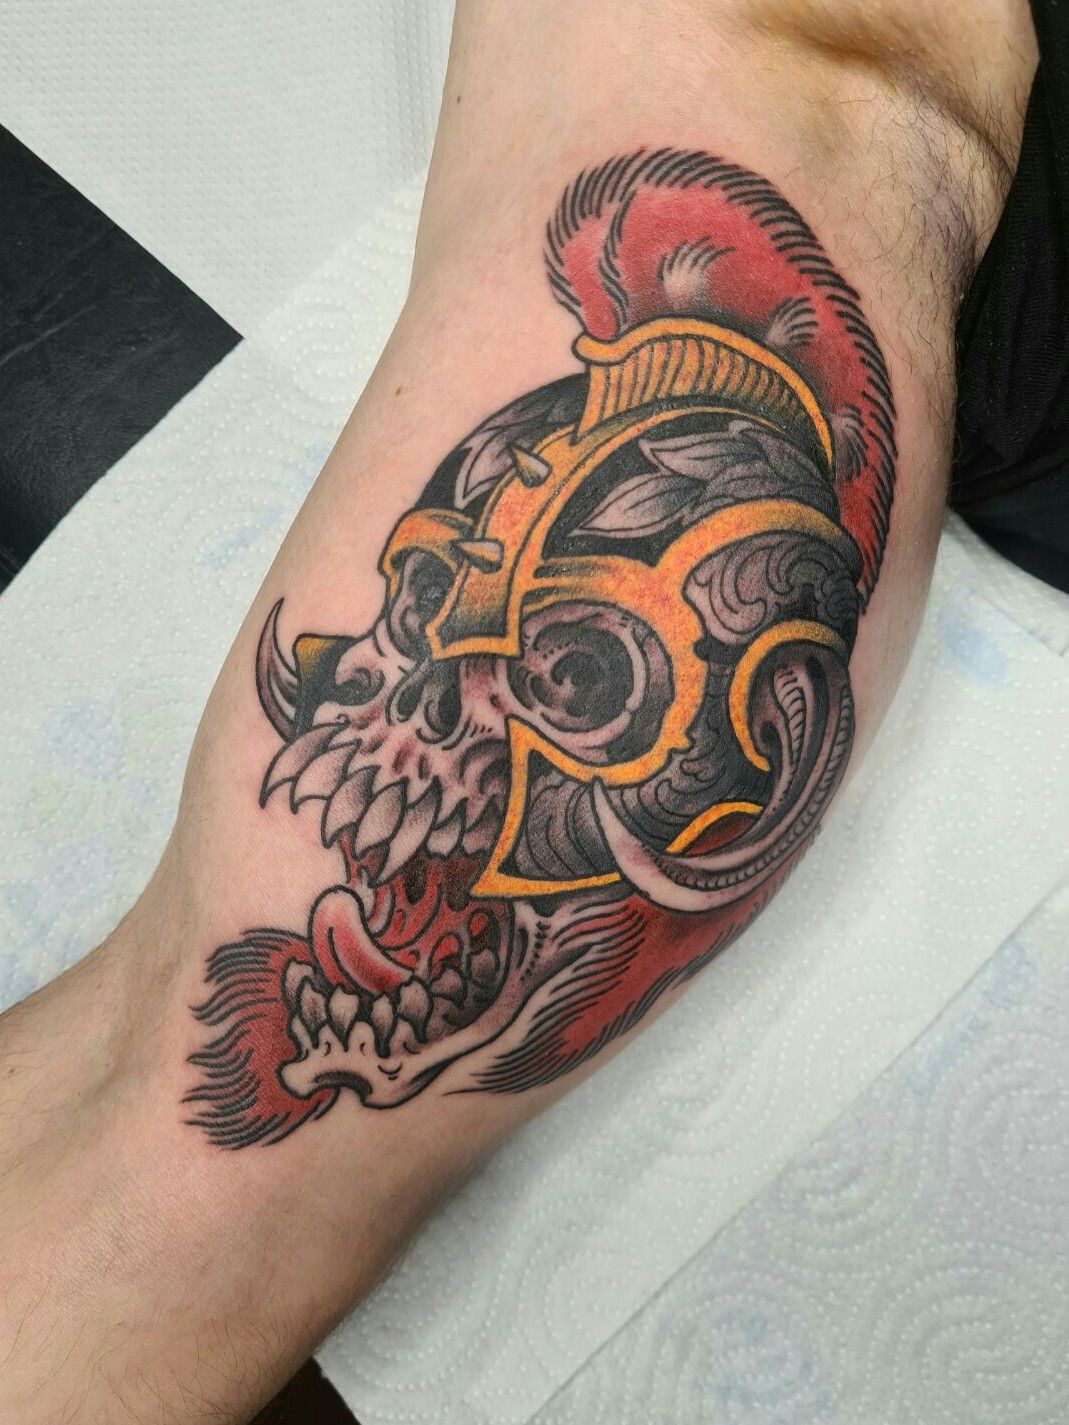 Firefighter tattoo with flames and a helmet tattoo idea | TattoosAI